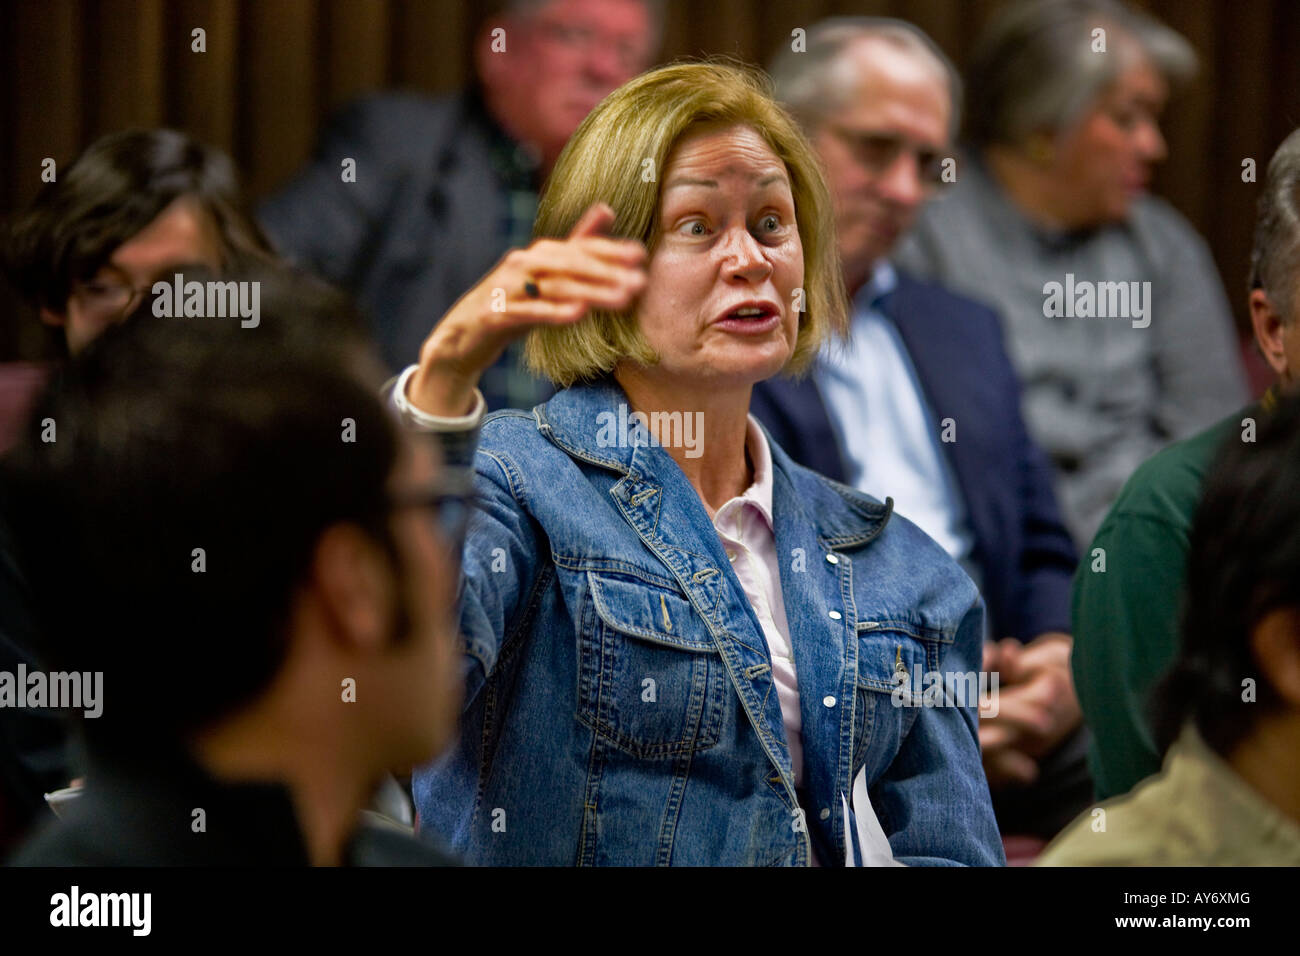 Una donna reagisce negativamente a un altoparlante istruzione alla California riunione politica nota le espressioni del pubblico Foto Stock